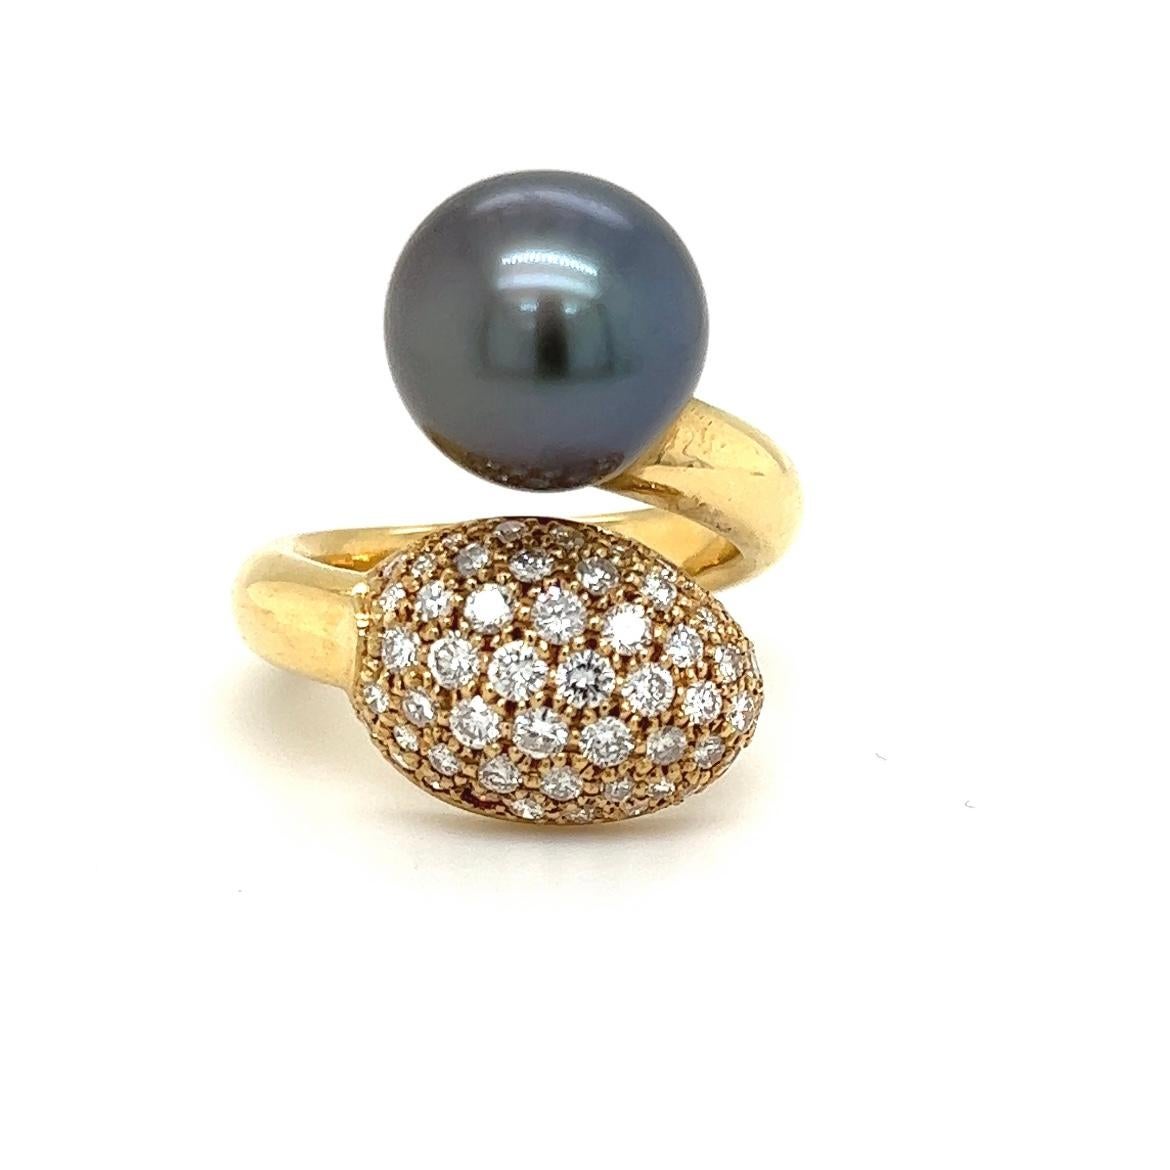 Bei diesem Ring handelt es sich um ein Designer Schmuckstück in 18 Karat (750/-.) Gelbgold mit einer sehr schönen Tahiti-Perle mit einem Durchmesser von 13.2mm. Die Tahiti-Perle hat einen sehr schönen Lüster, eine feine Farbe und eine sehr gute